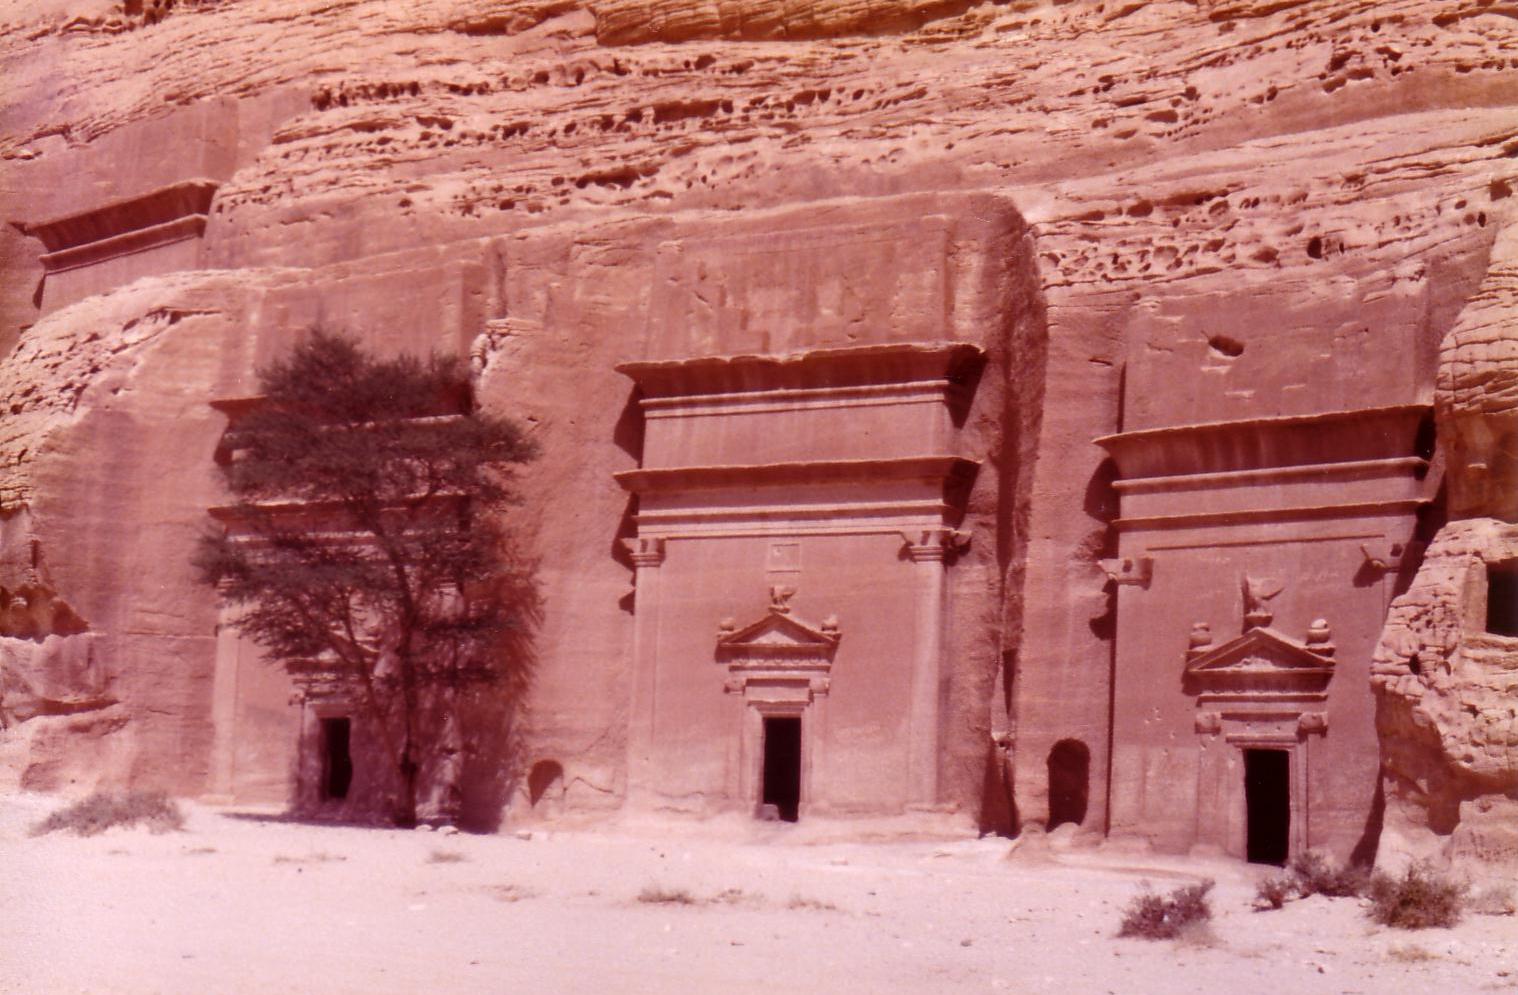 Madain Salih Nabatean tombs